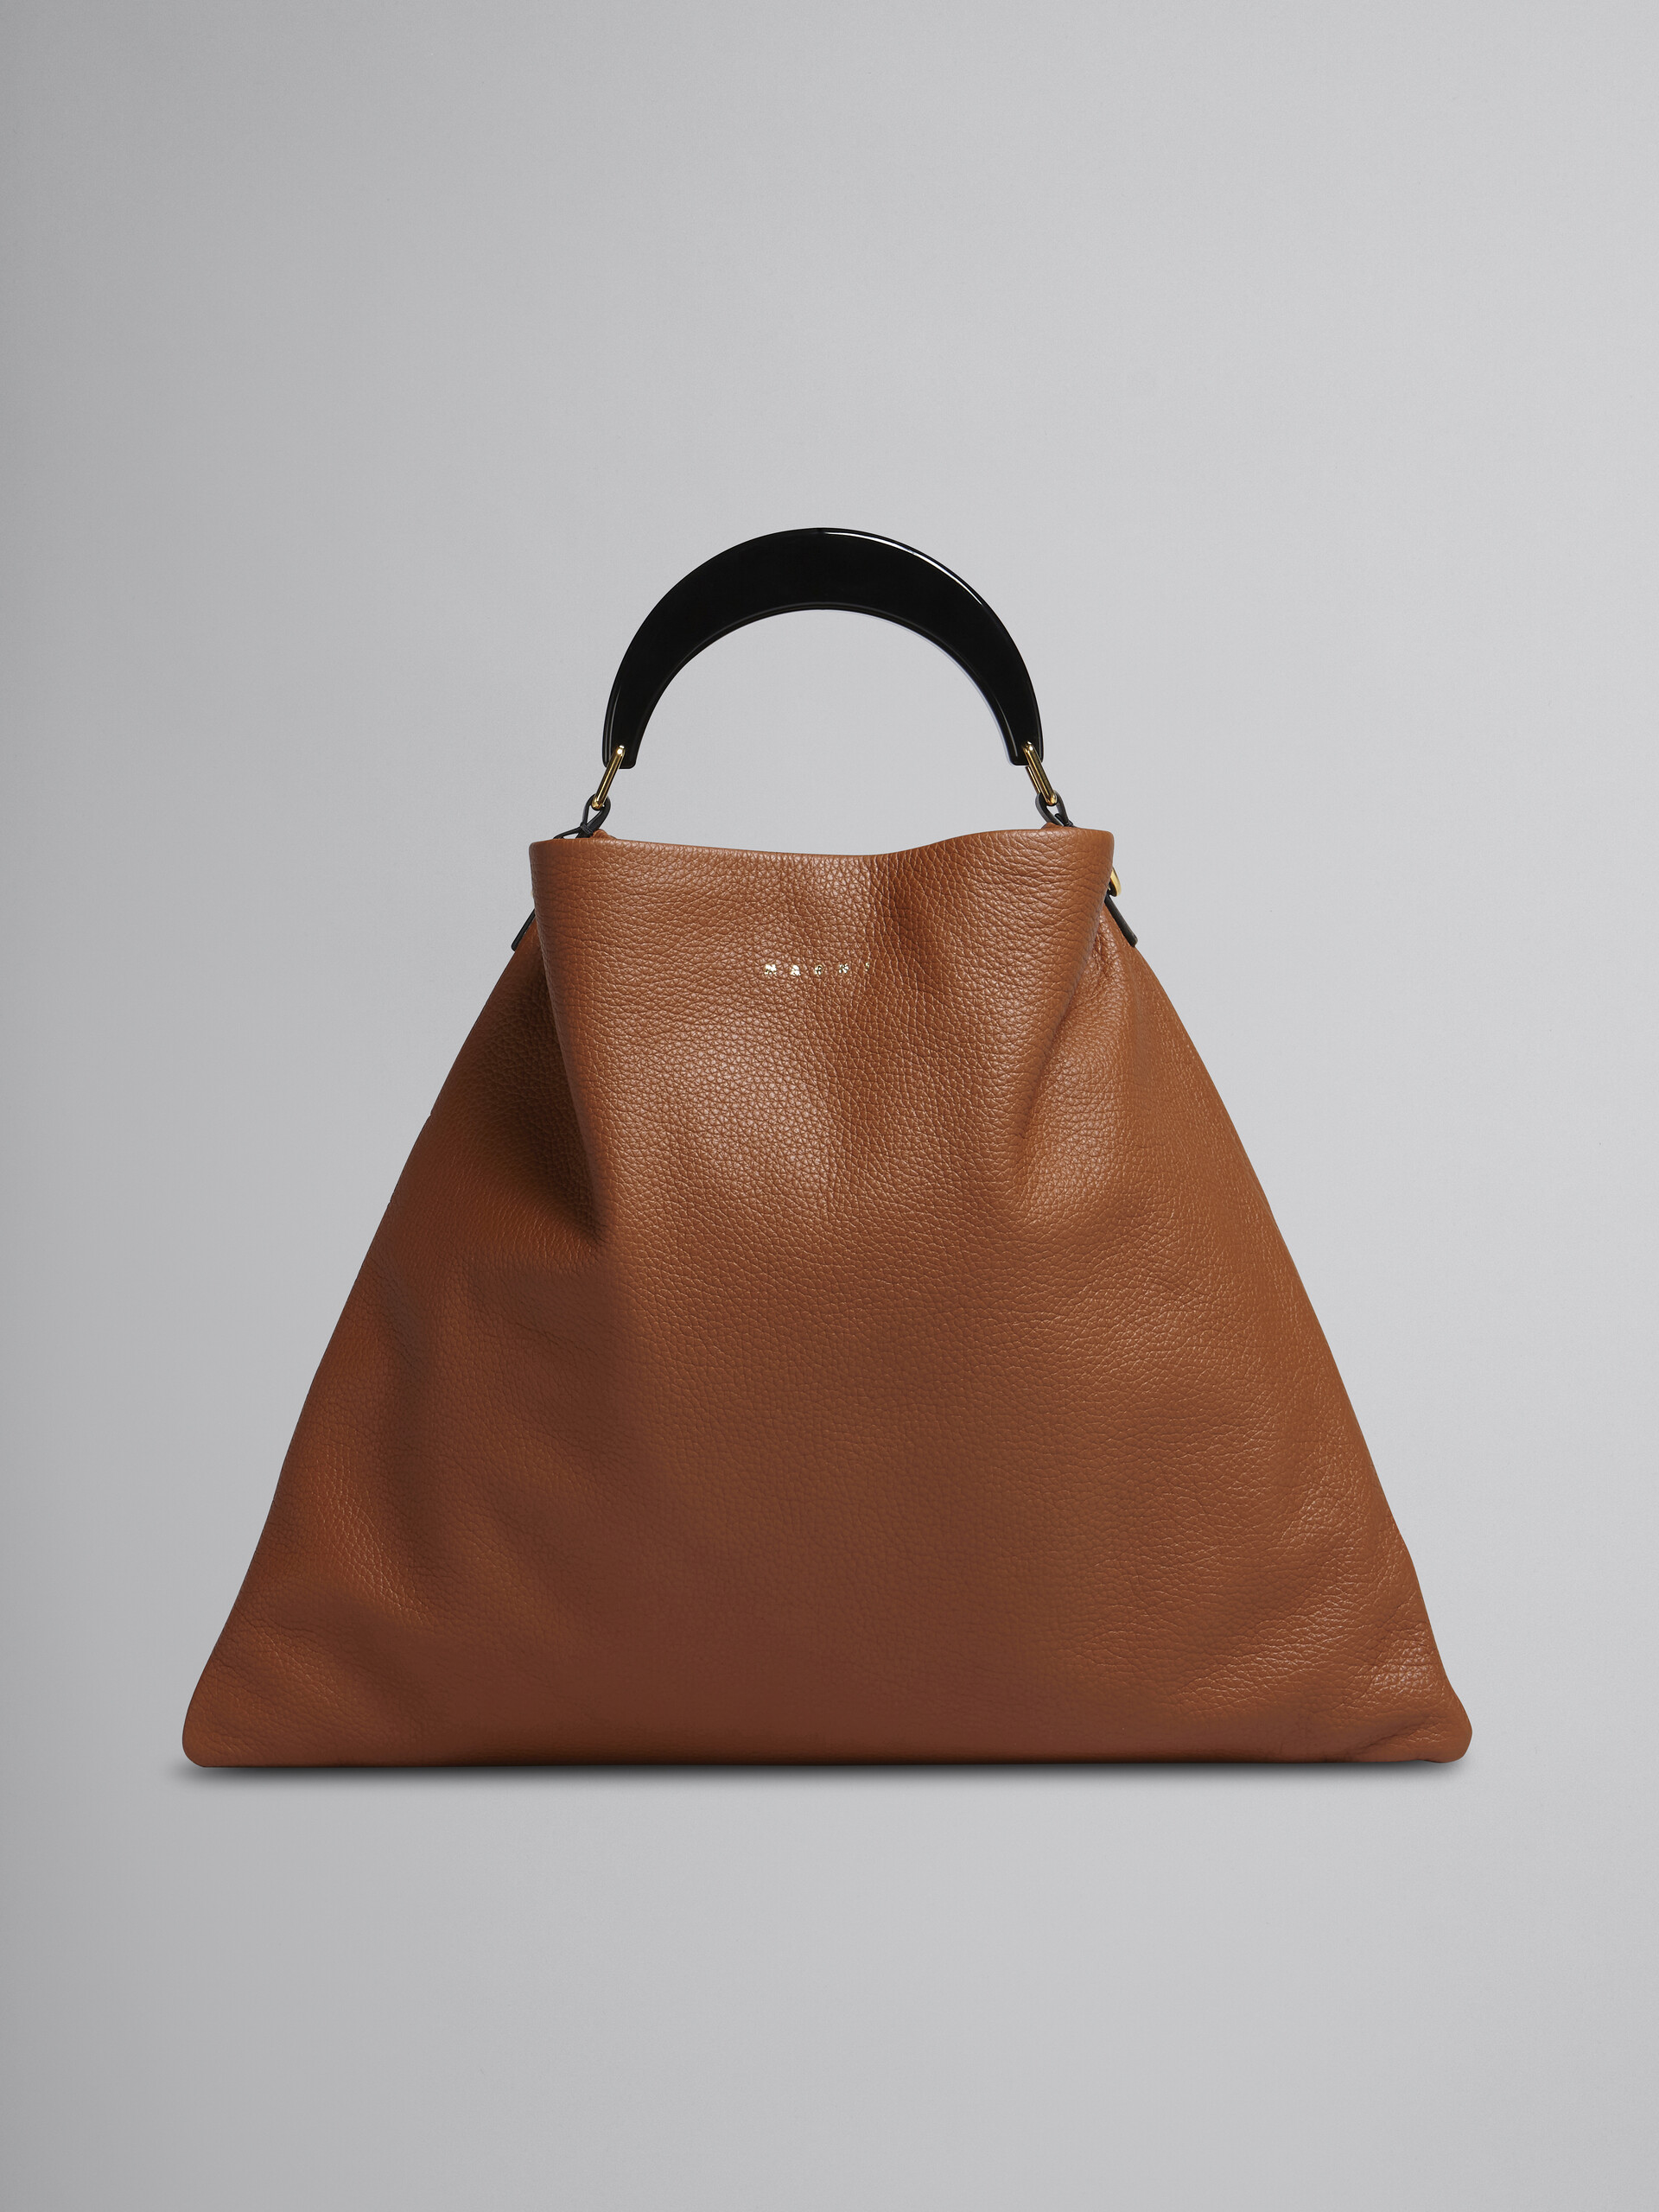 Venice medium bag in brown leather - Shoulder Bag - Image 1